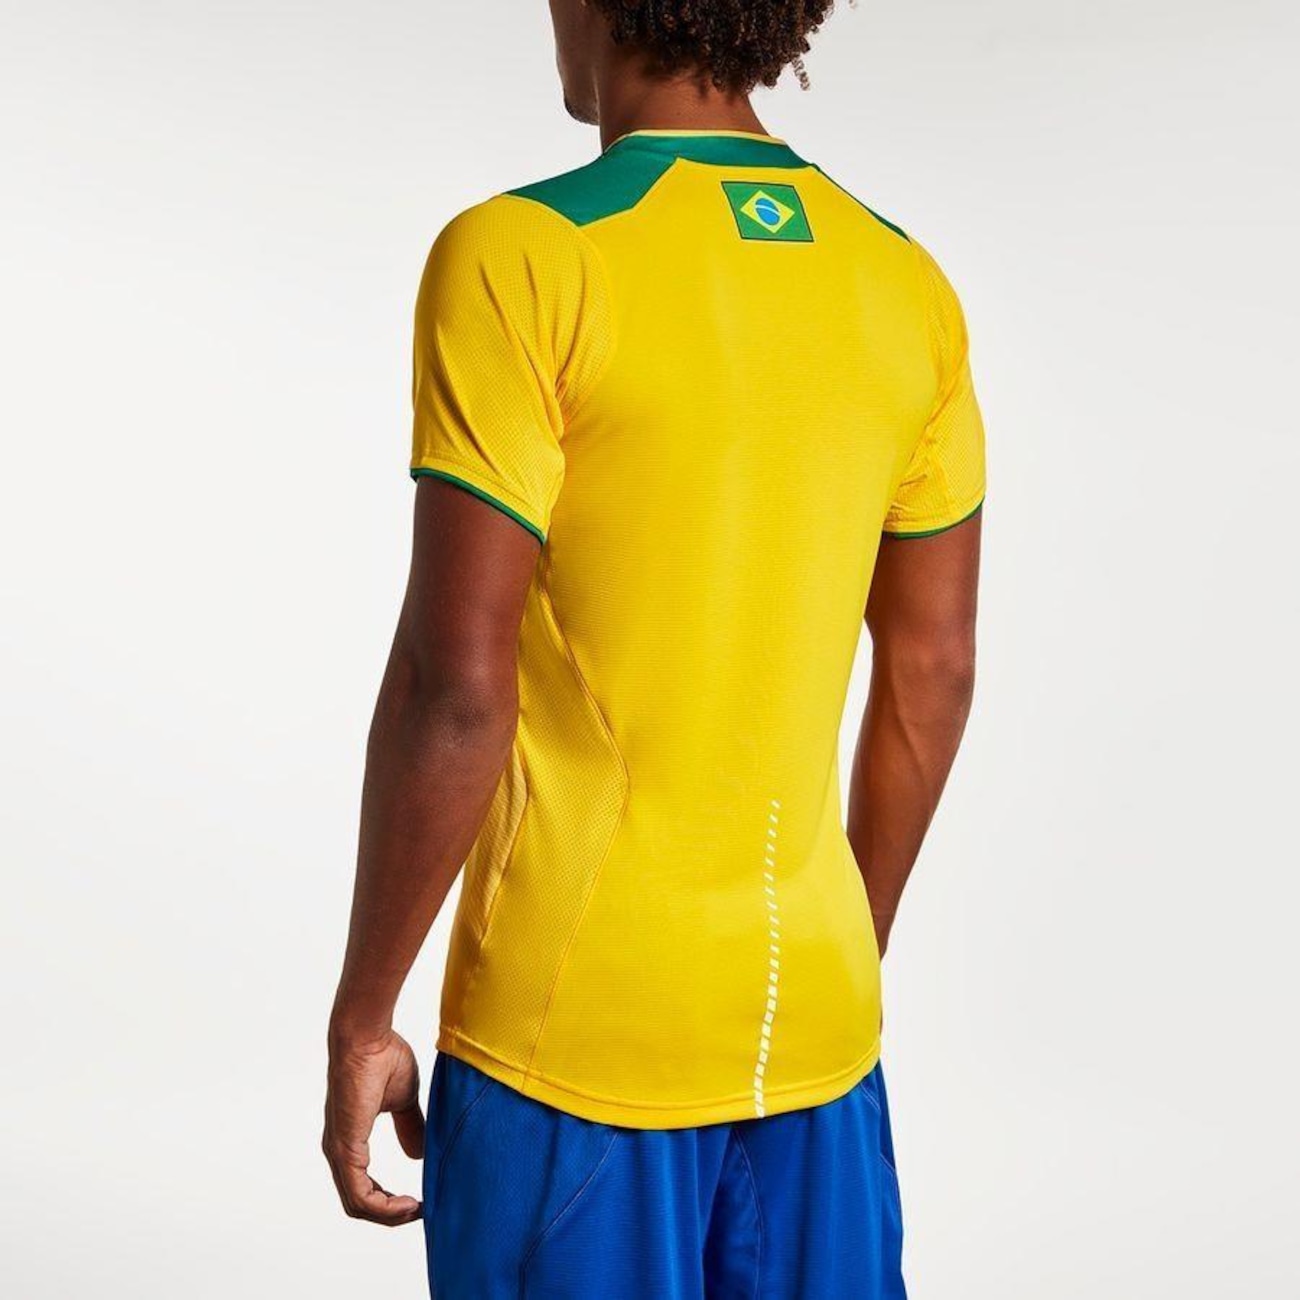 Camisa Seleção Brasil Vôlei, Camiseta Masculina Asics Usado 45156124